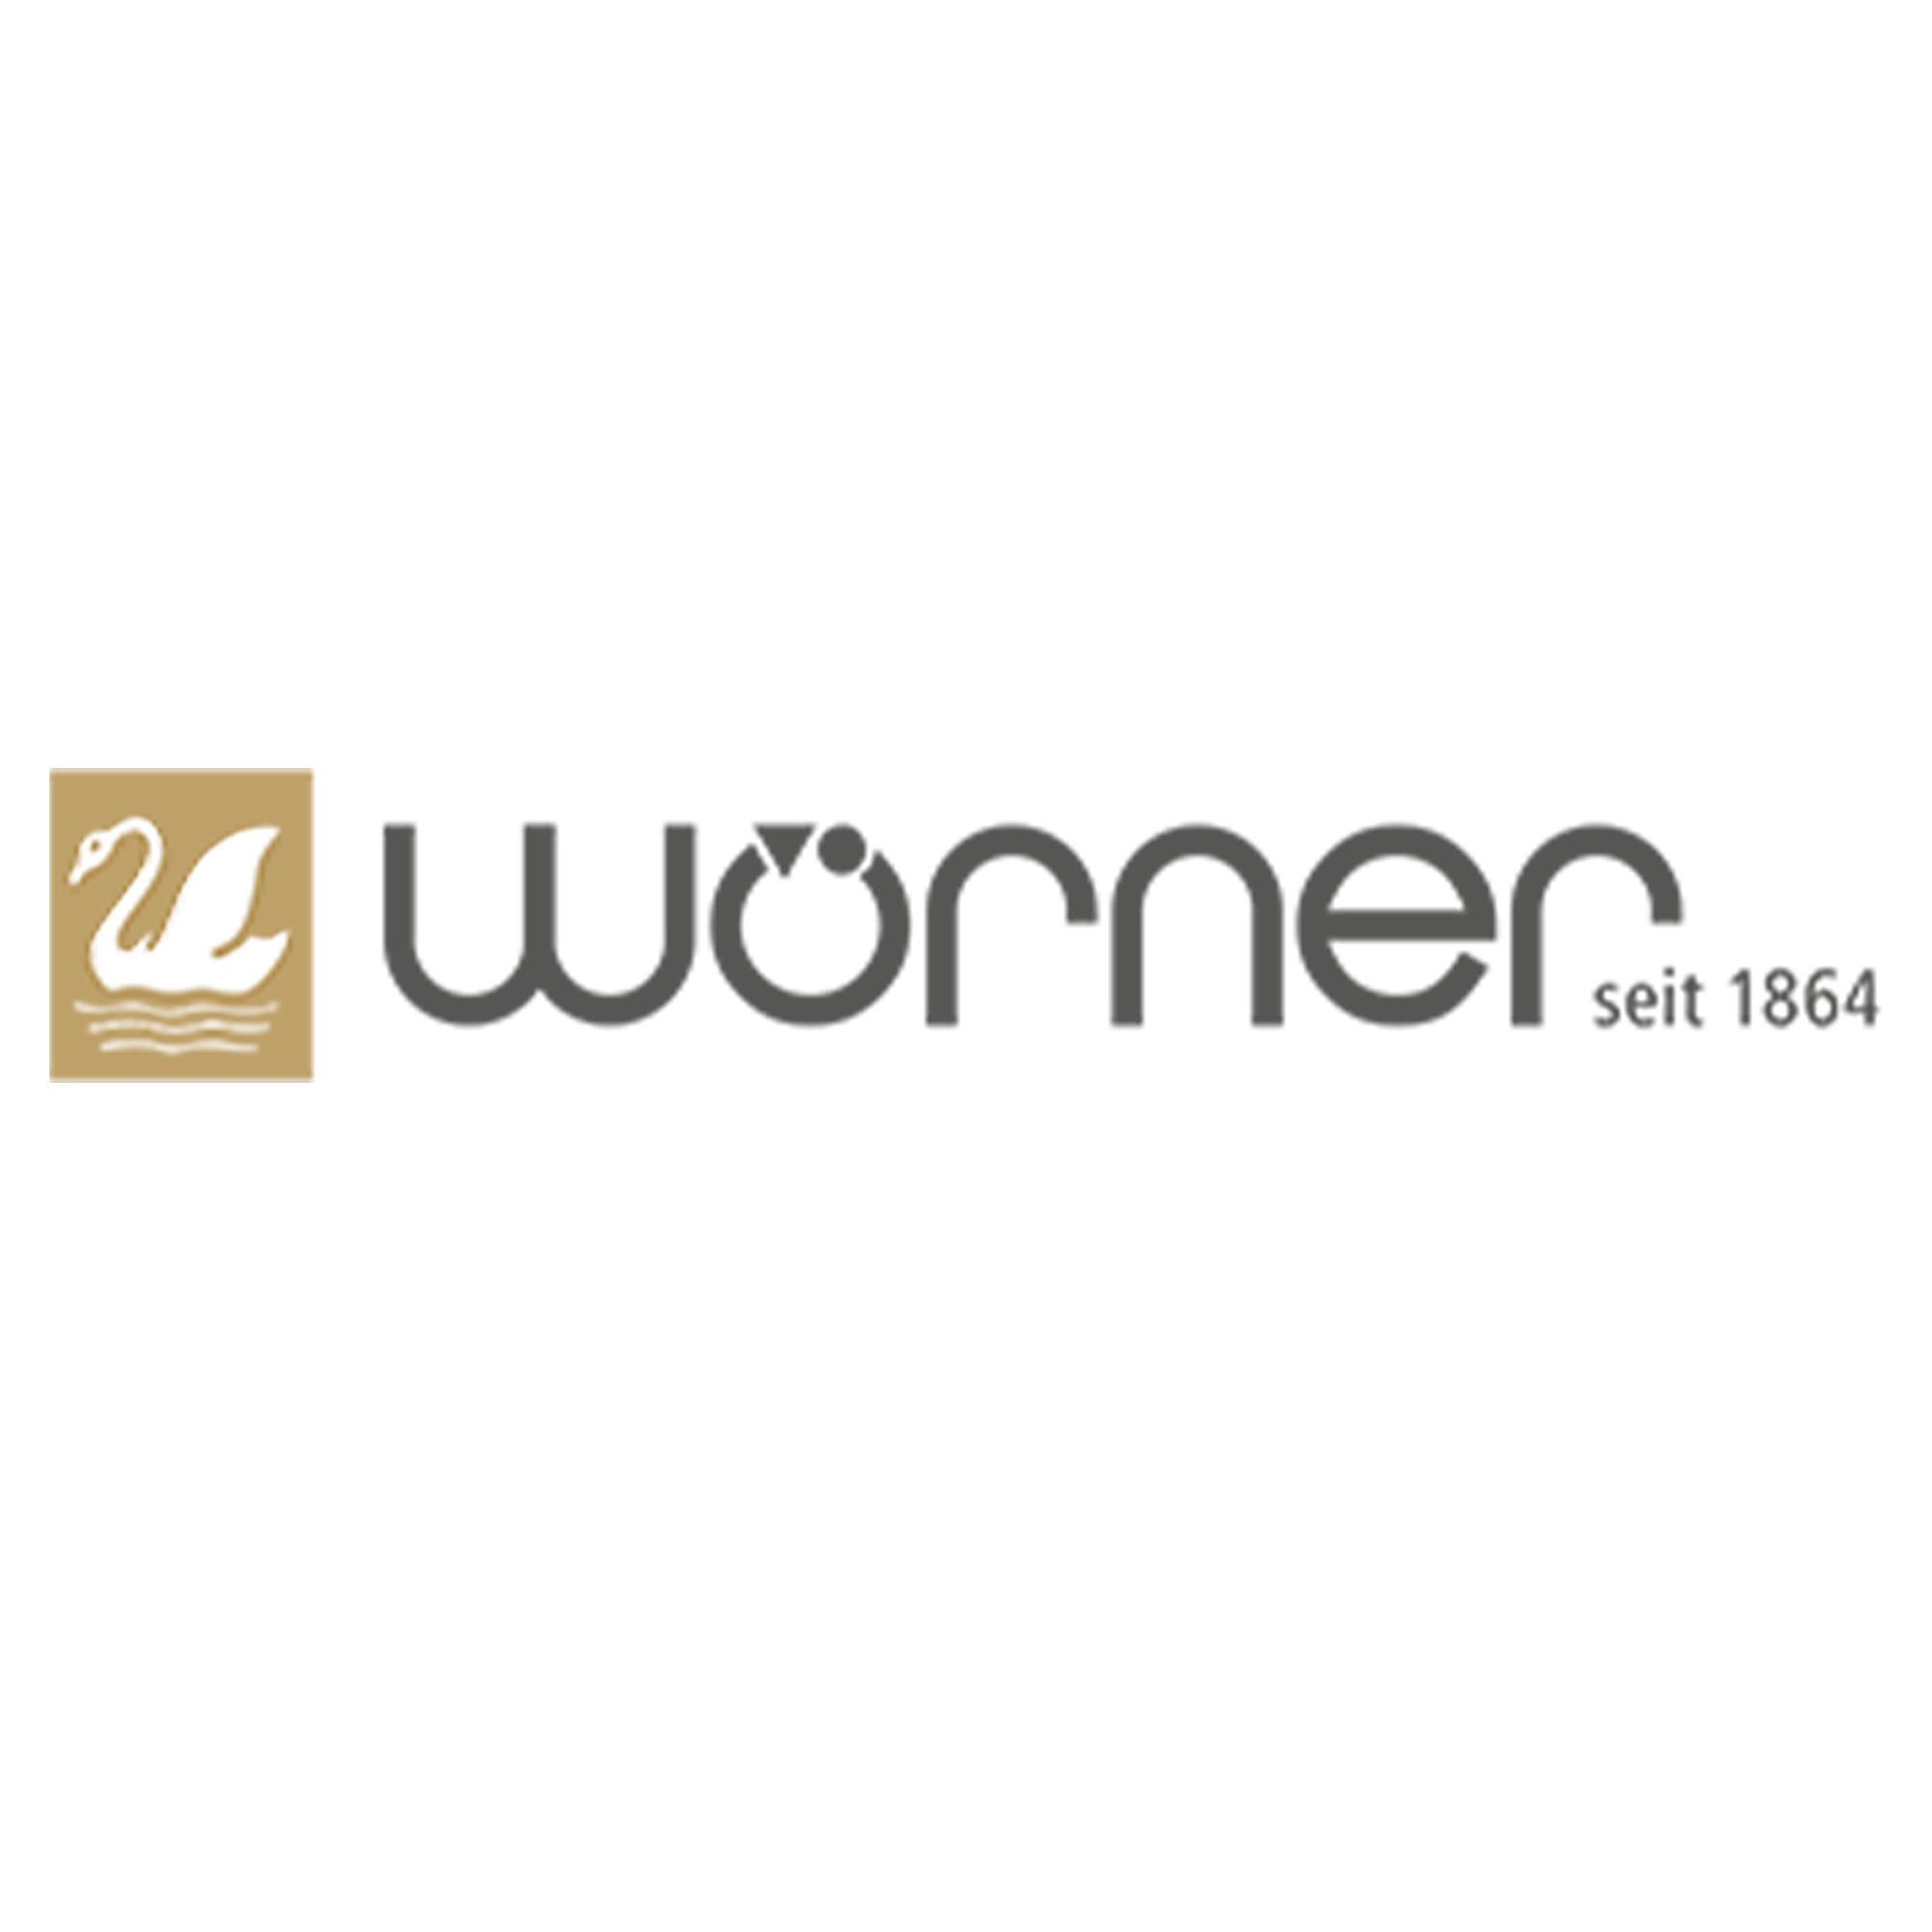 Woerner Logo